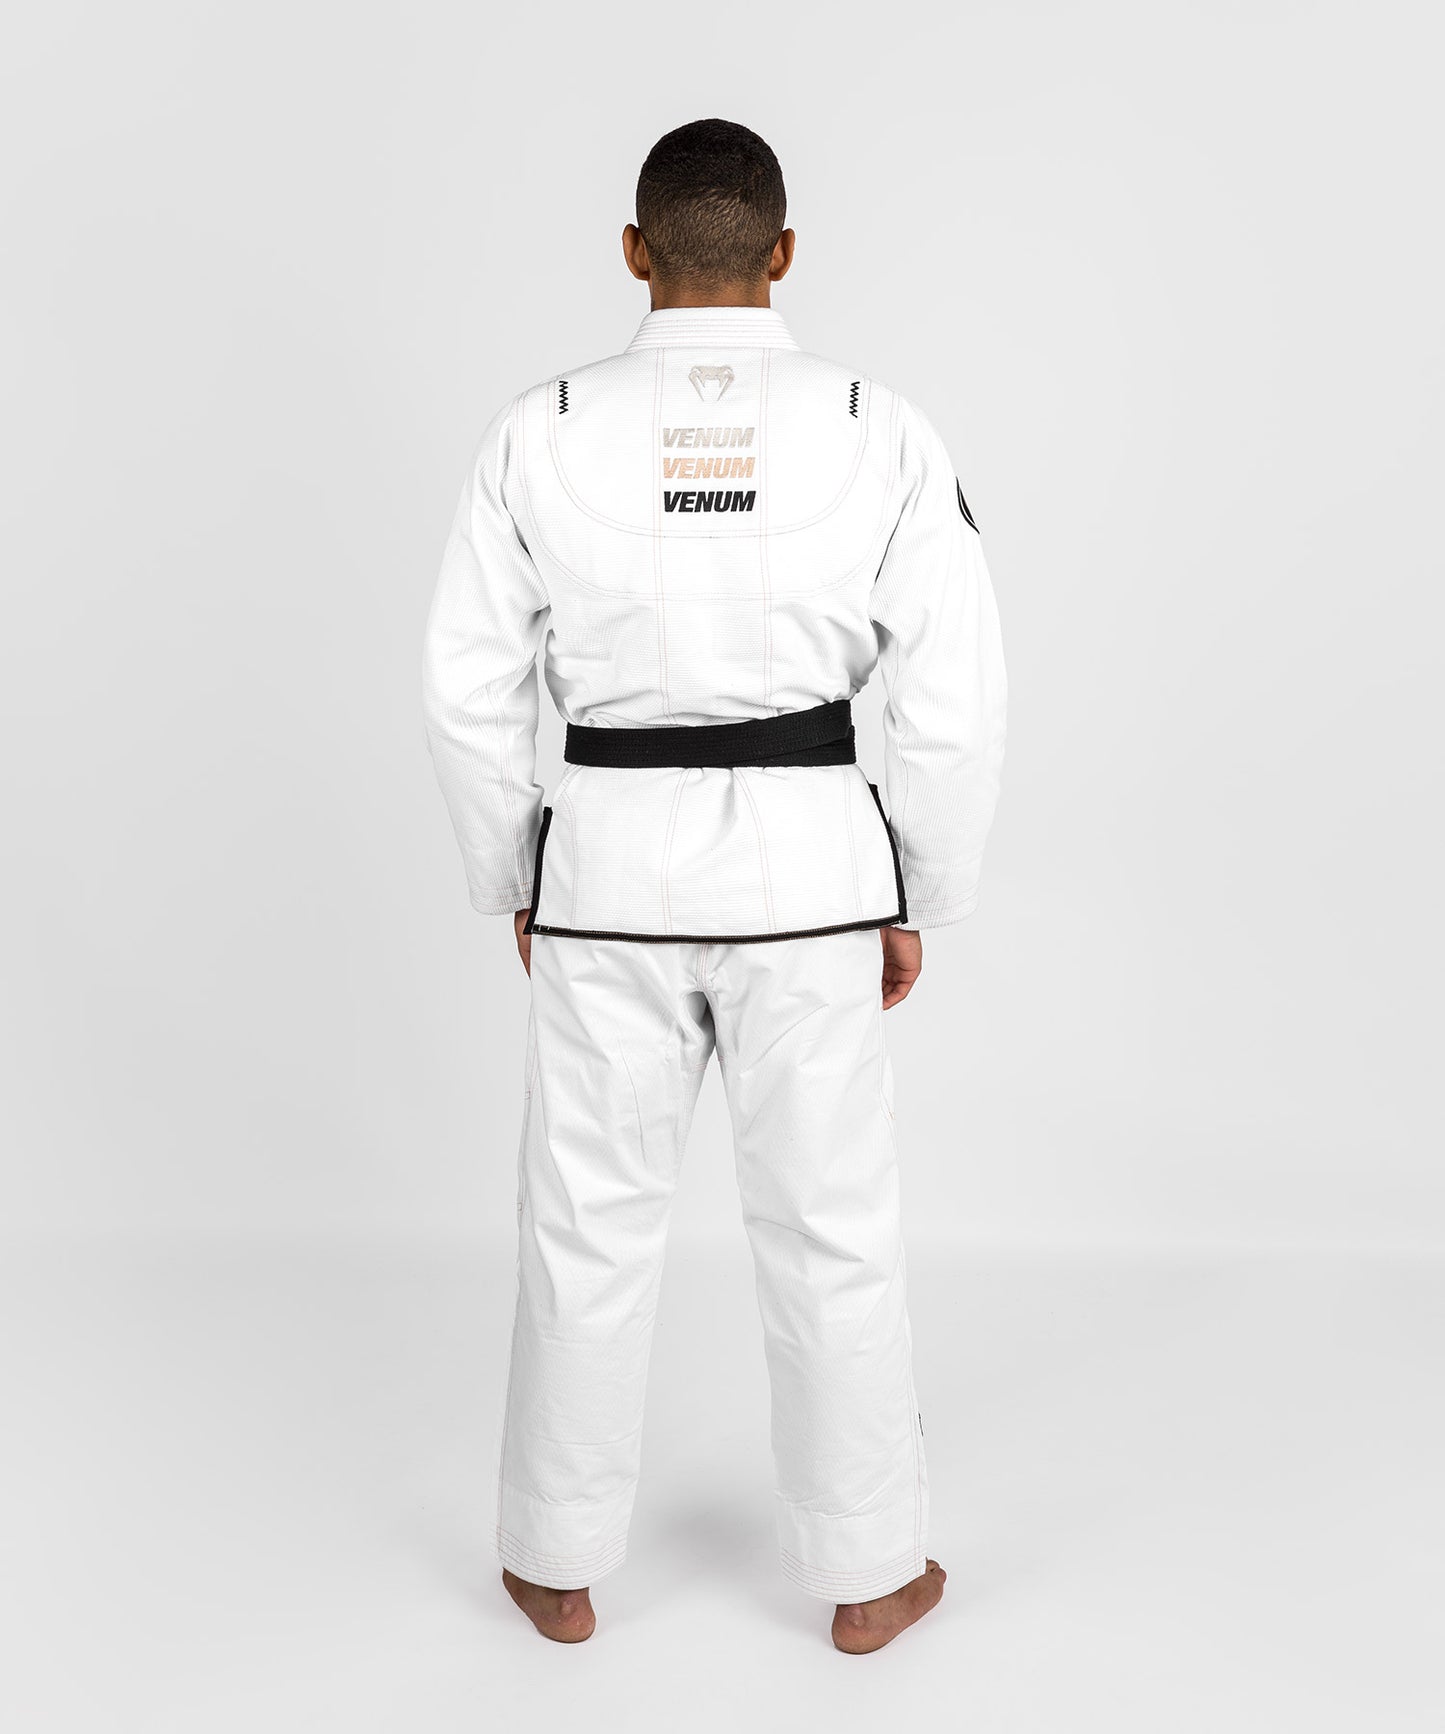 Venum Elite 4.0 Brazilian Jiu Jitsu Gi- Blanco